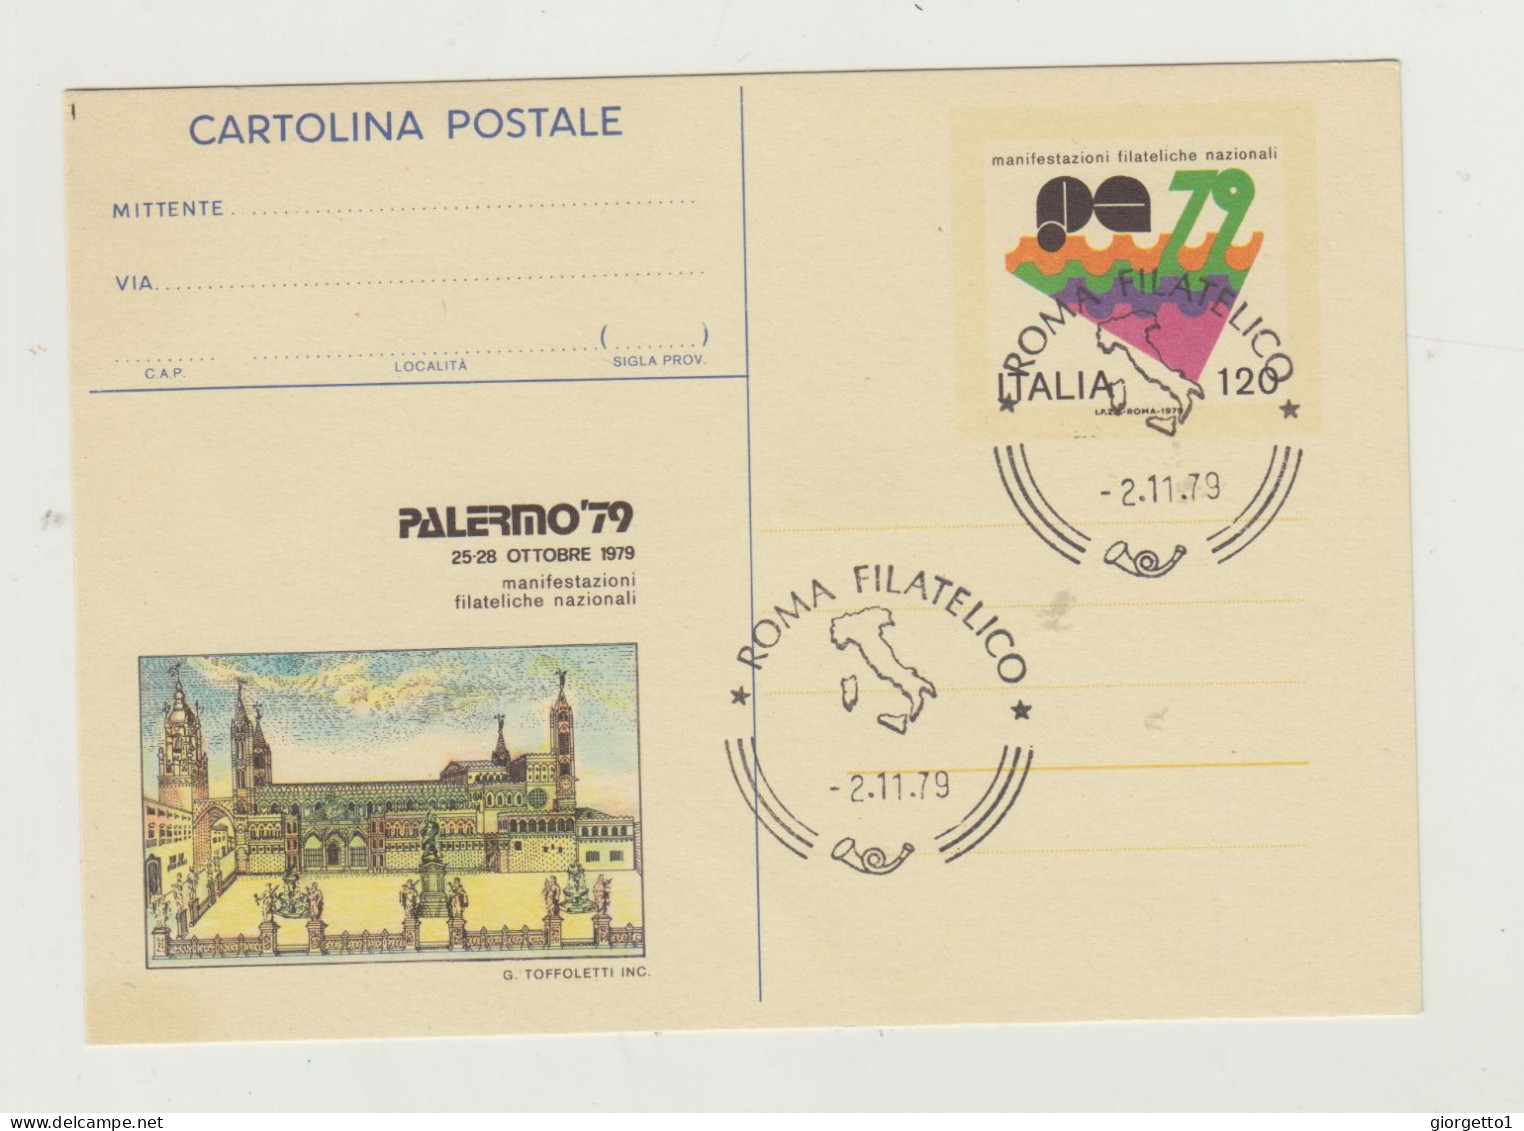 CARTOLINA POSTALE MANIFESTAZIONI FILATELICHE POSTALI - PALERMO 79 - ANNULLO ROMA FILATELICO 2-11-1979 - Marcophilia